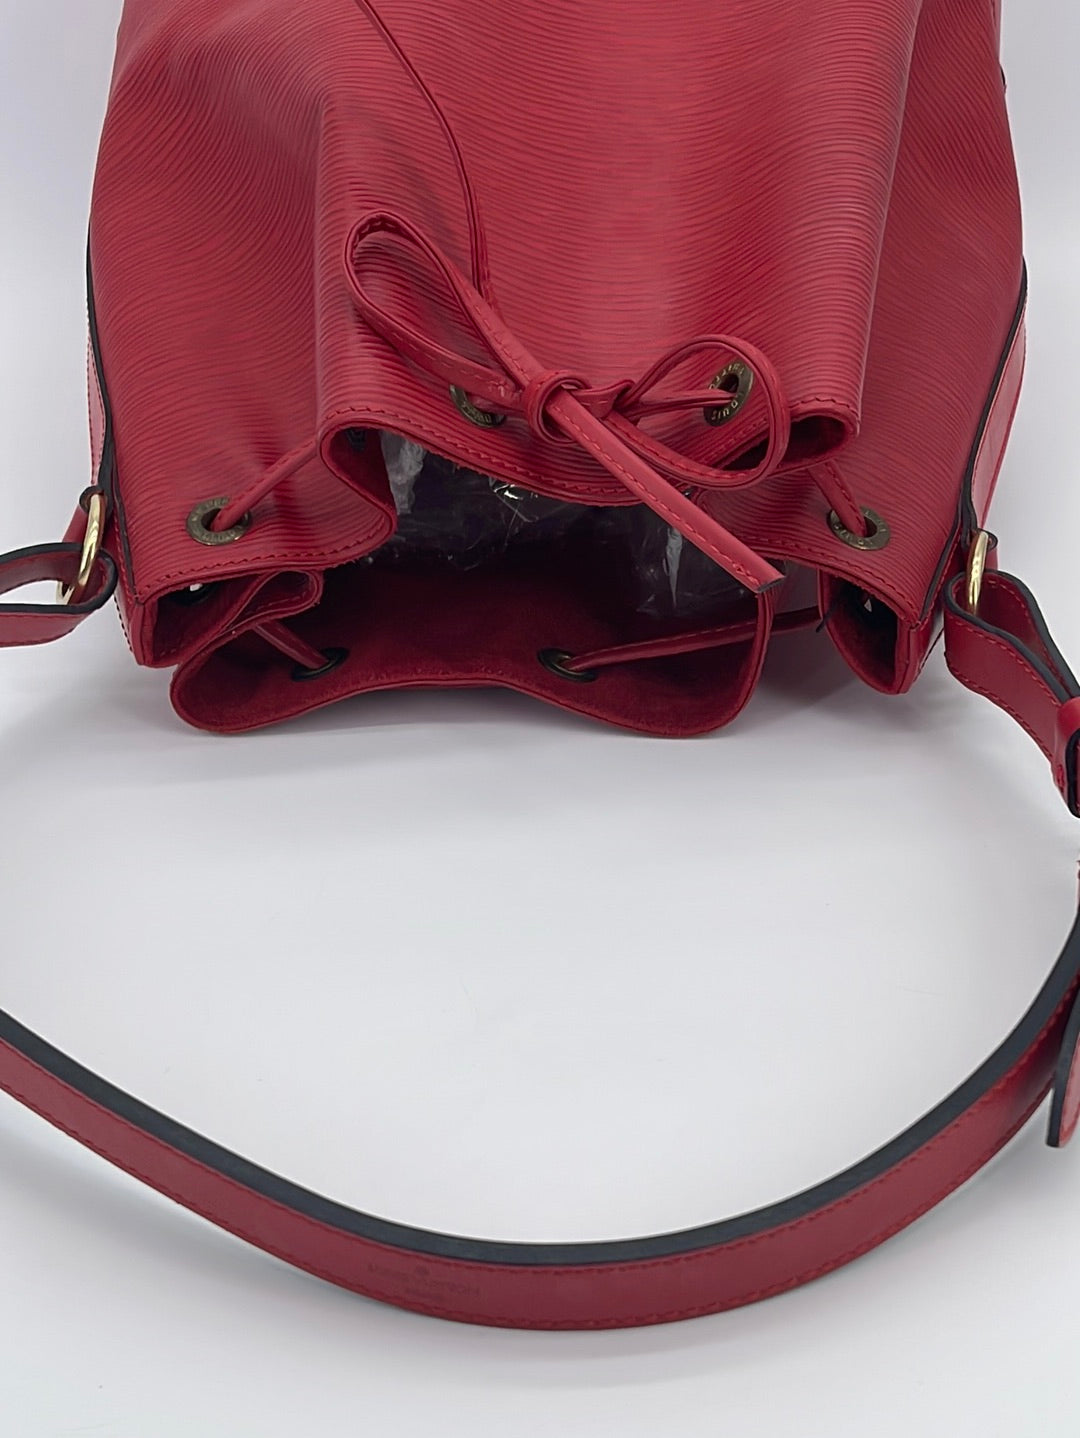 Louis Vuitton Noé Handbag 340848